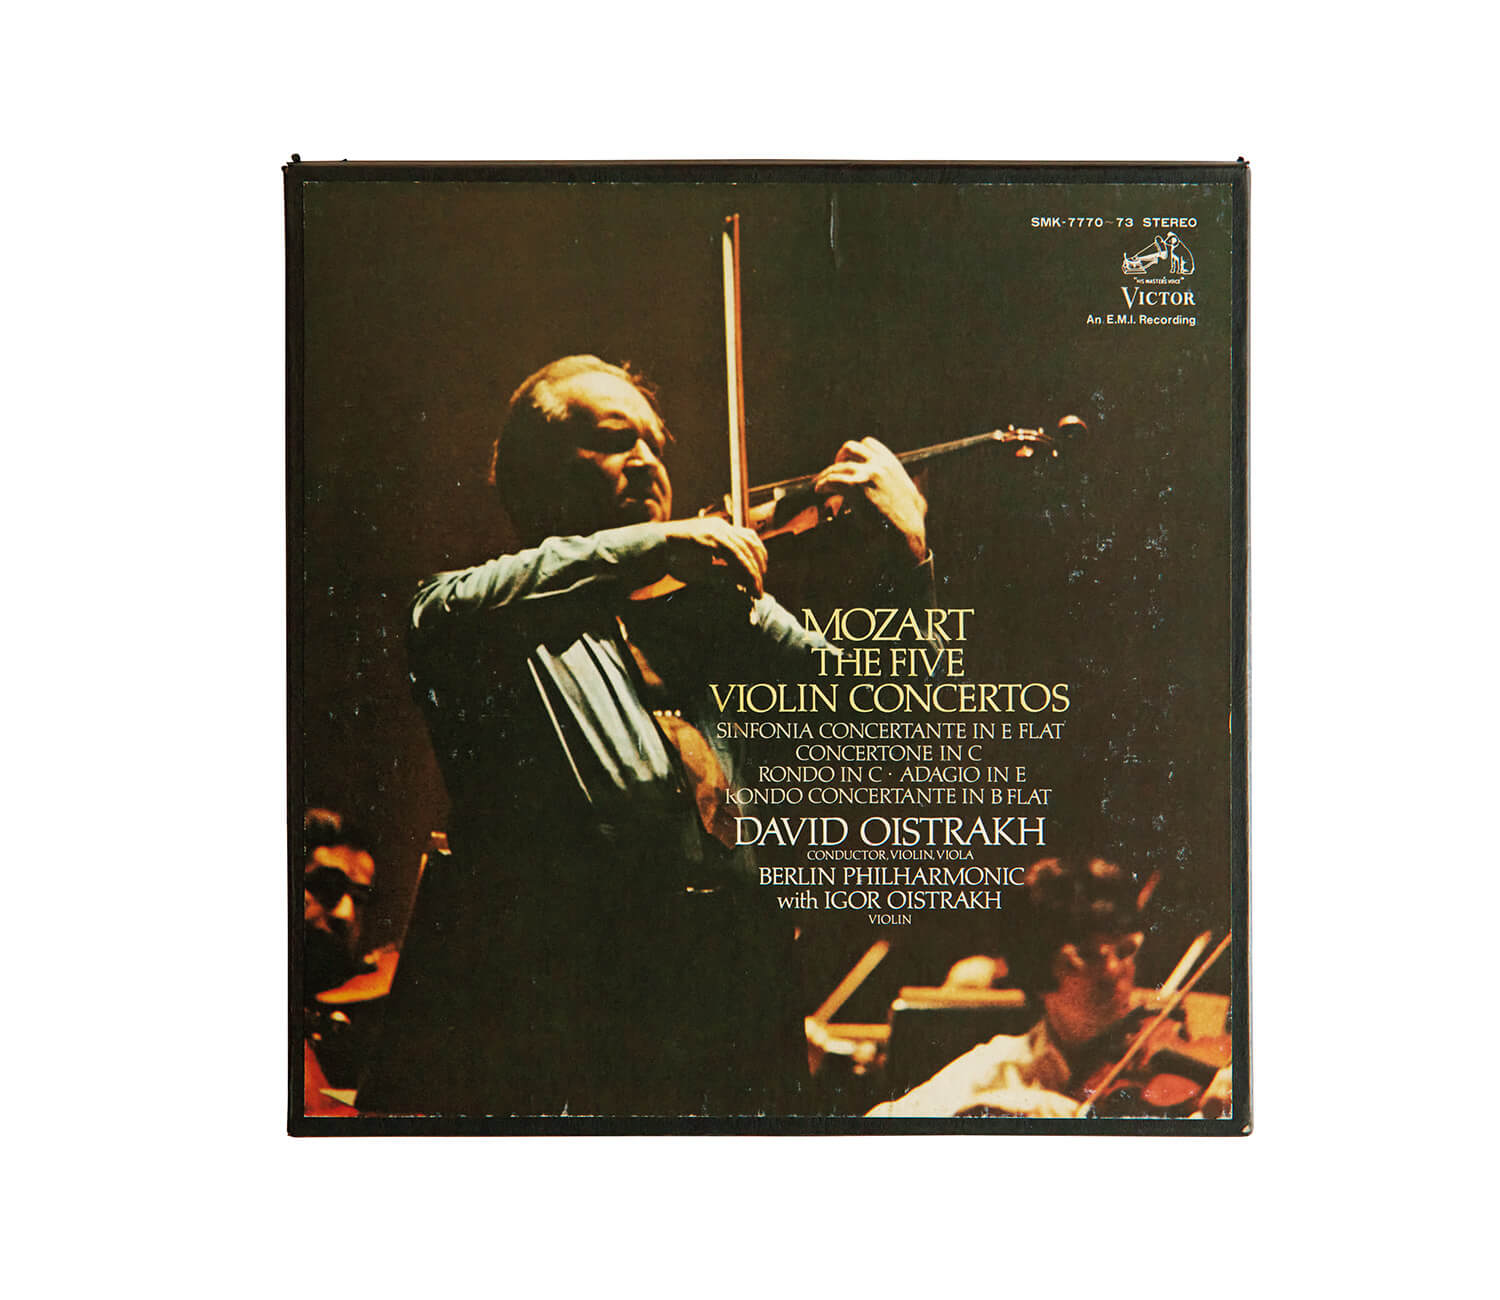 ダヴィッド・オイストラフが演奏した、モーツァルト「ヴァイオリン協奏曲第5番 イ長調」レコードジャケット